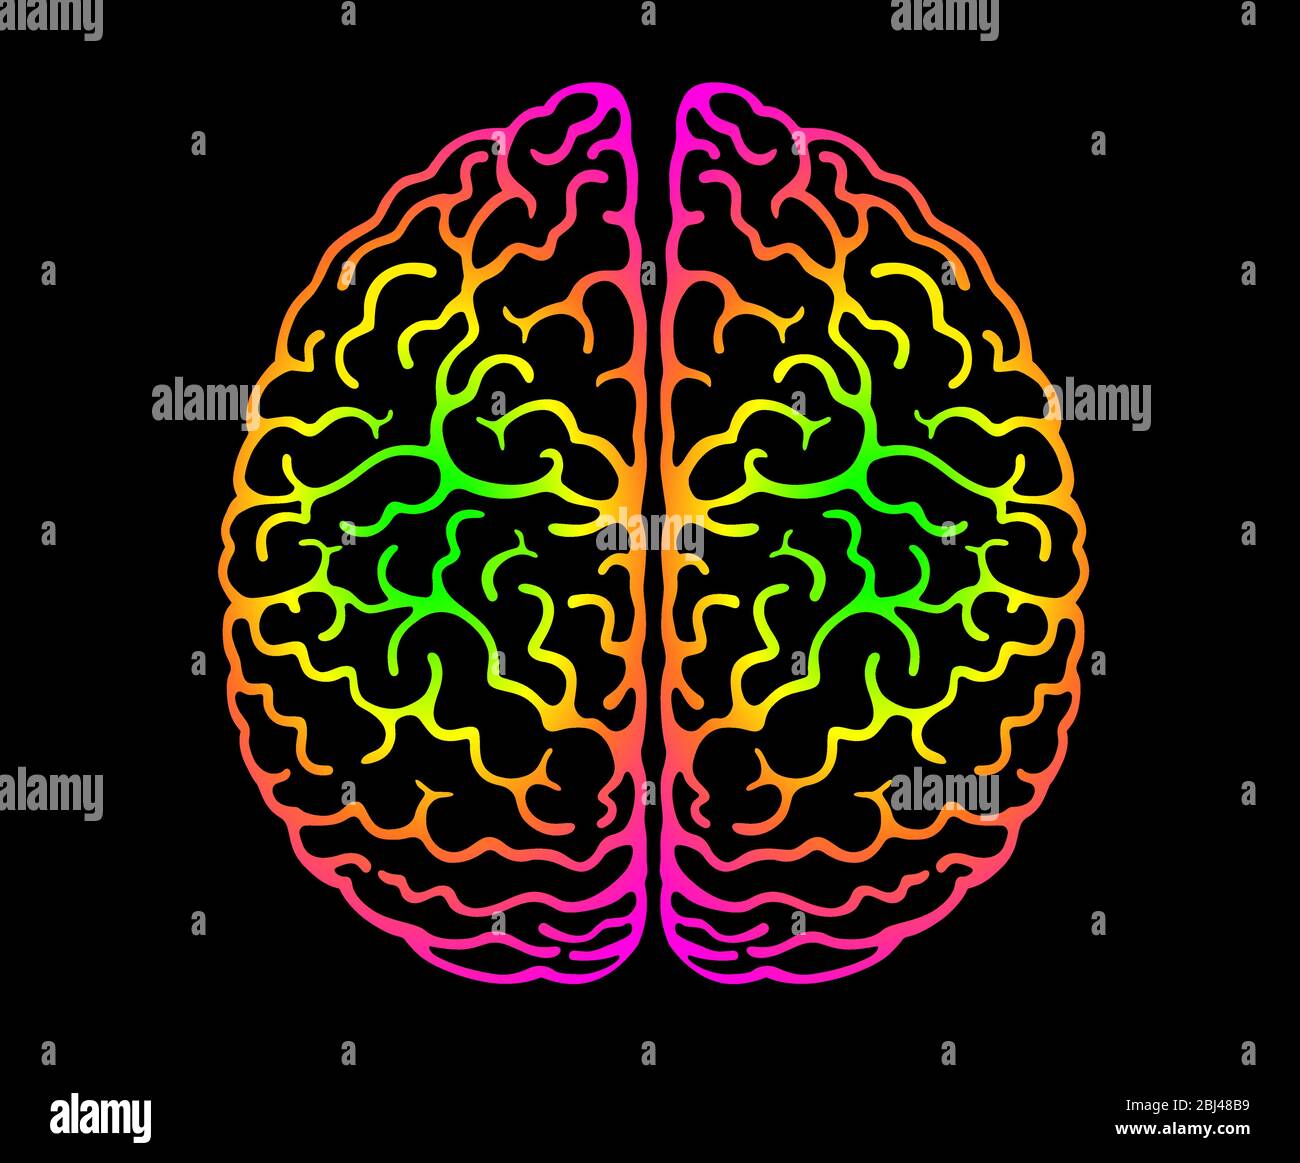 Cervello umano. Colori brillanti sfondo nero. Emisferi cerebrali, convoluzioni della mente cervello, pieghe del cervello. Vista dall'alto, vista frontale, realista Illustrazione Vettoriale